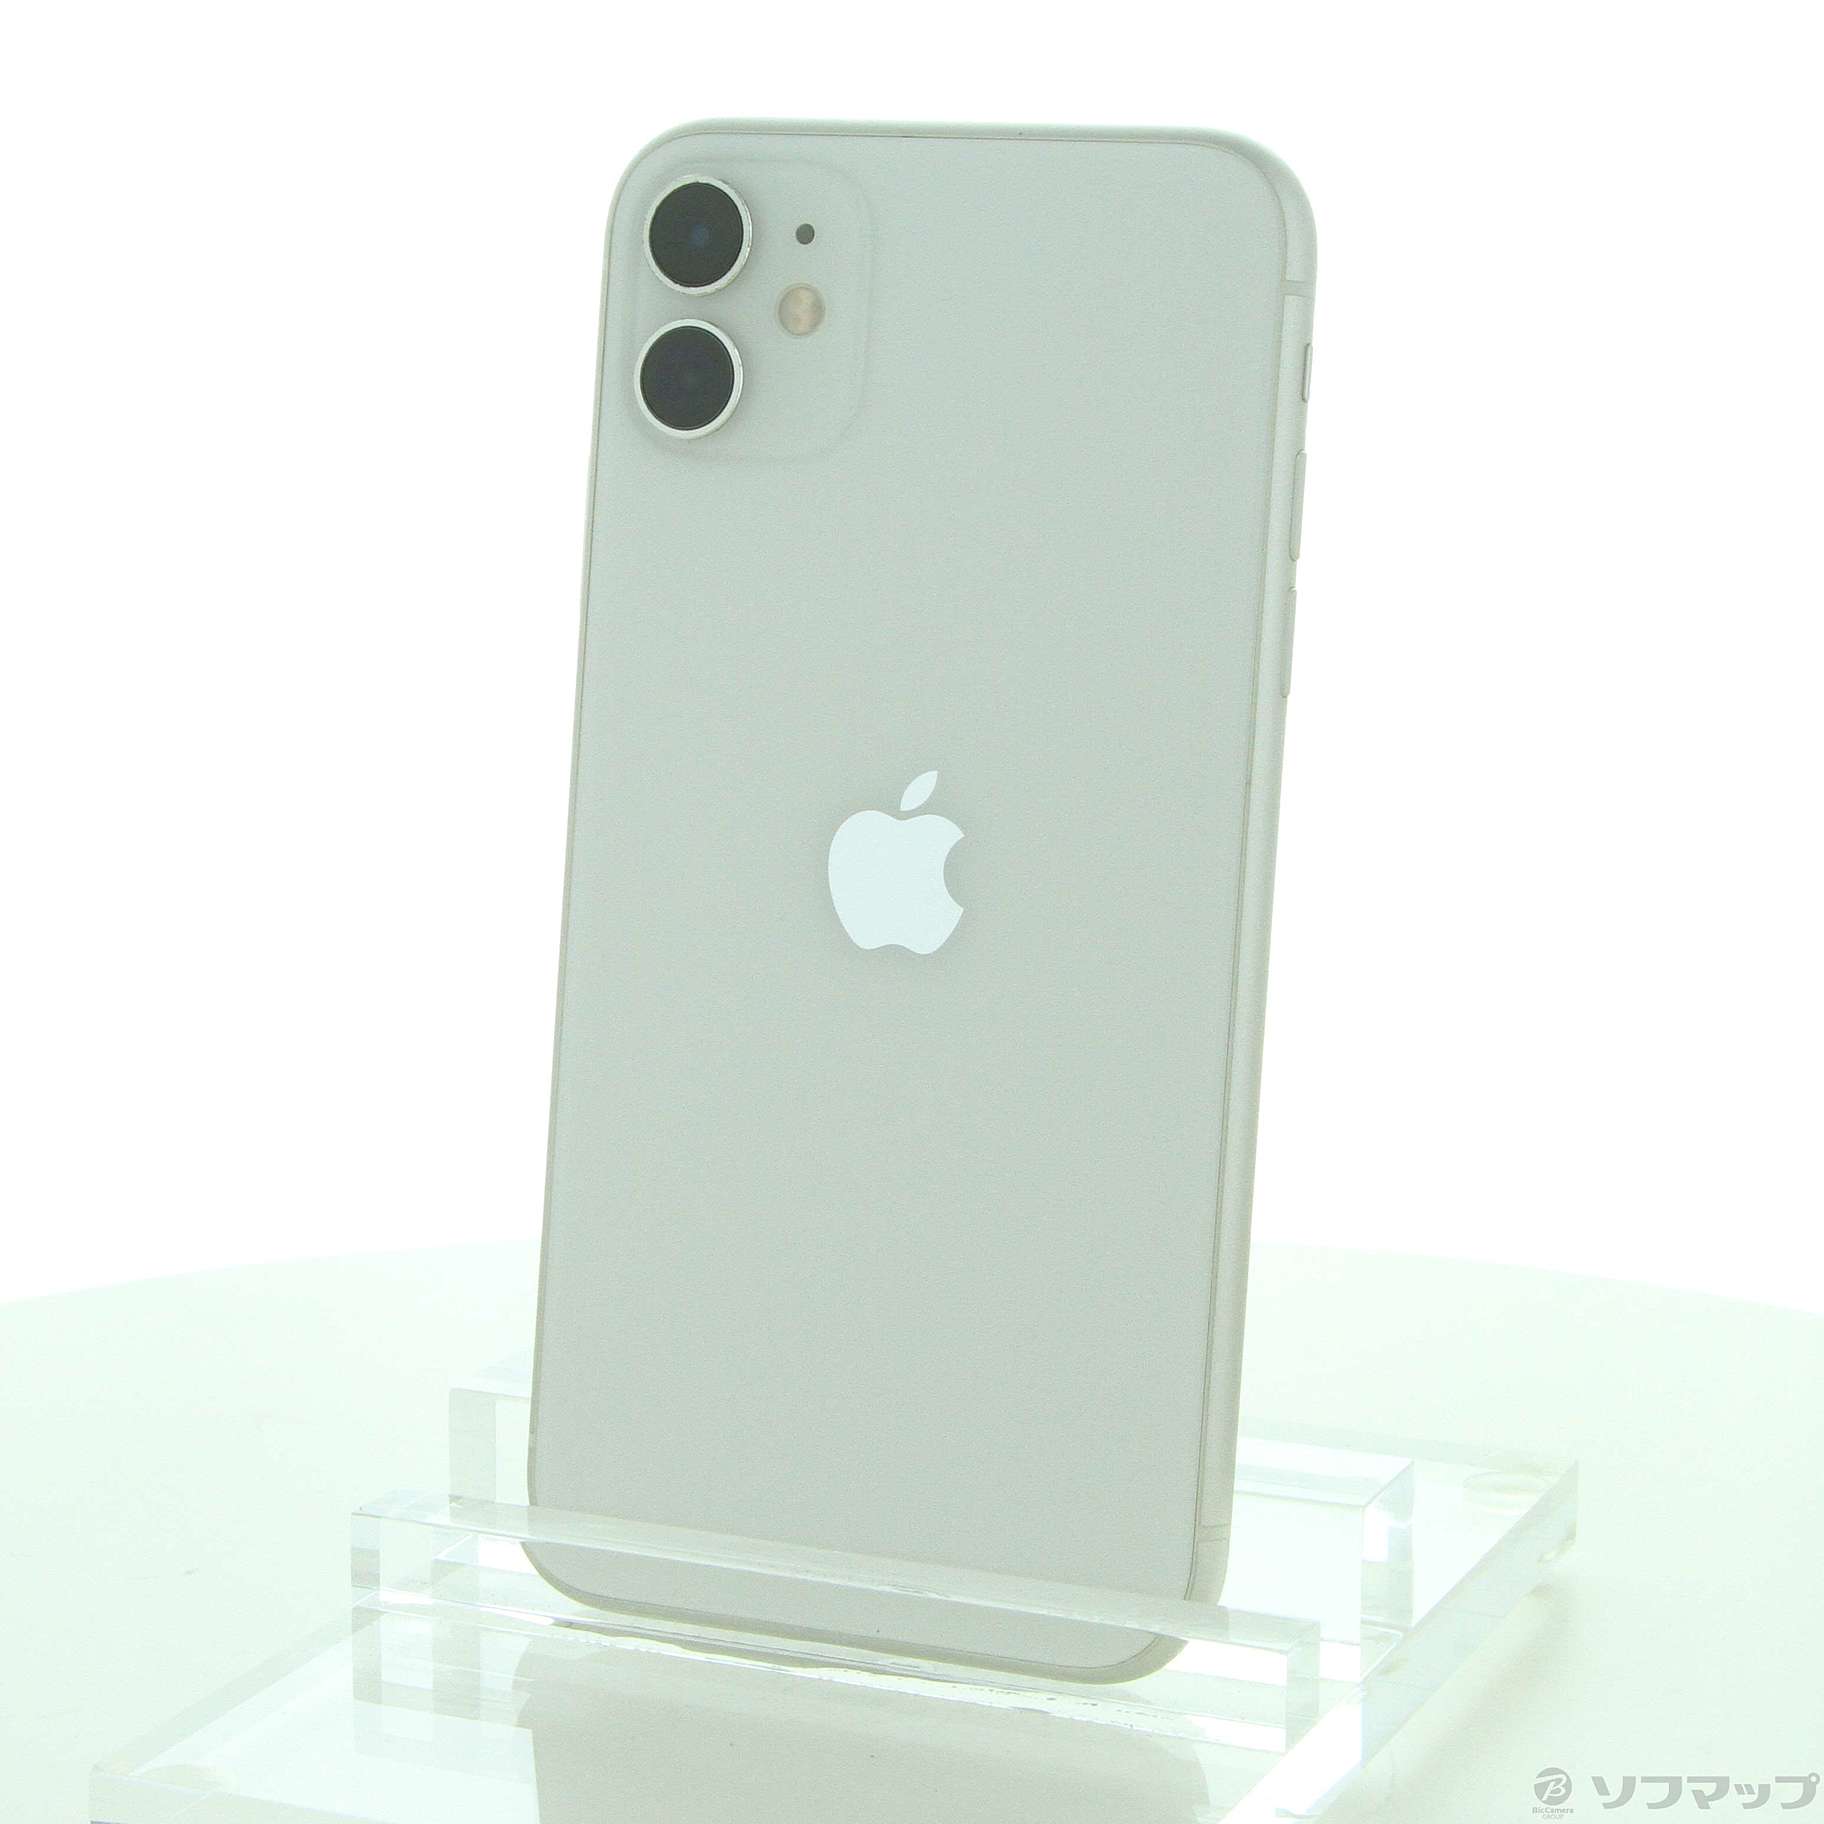 iPhone11 64GB ホワイト